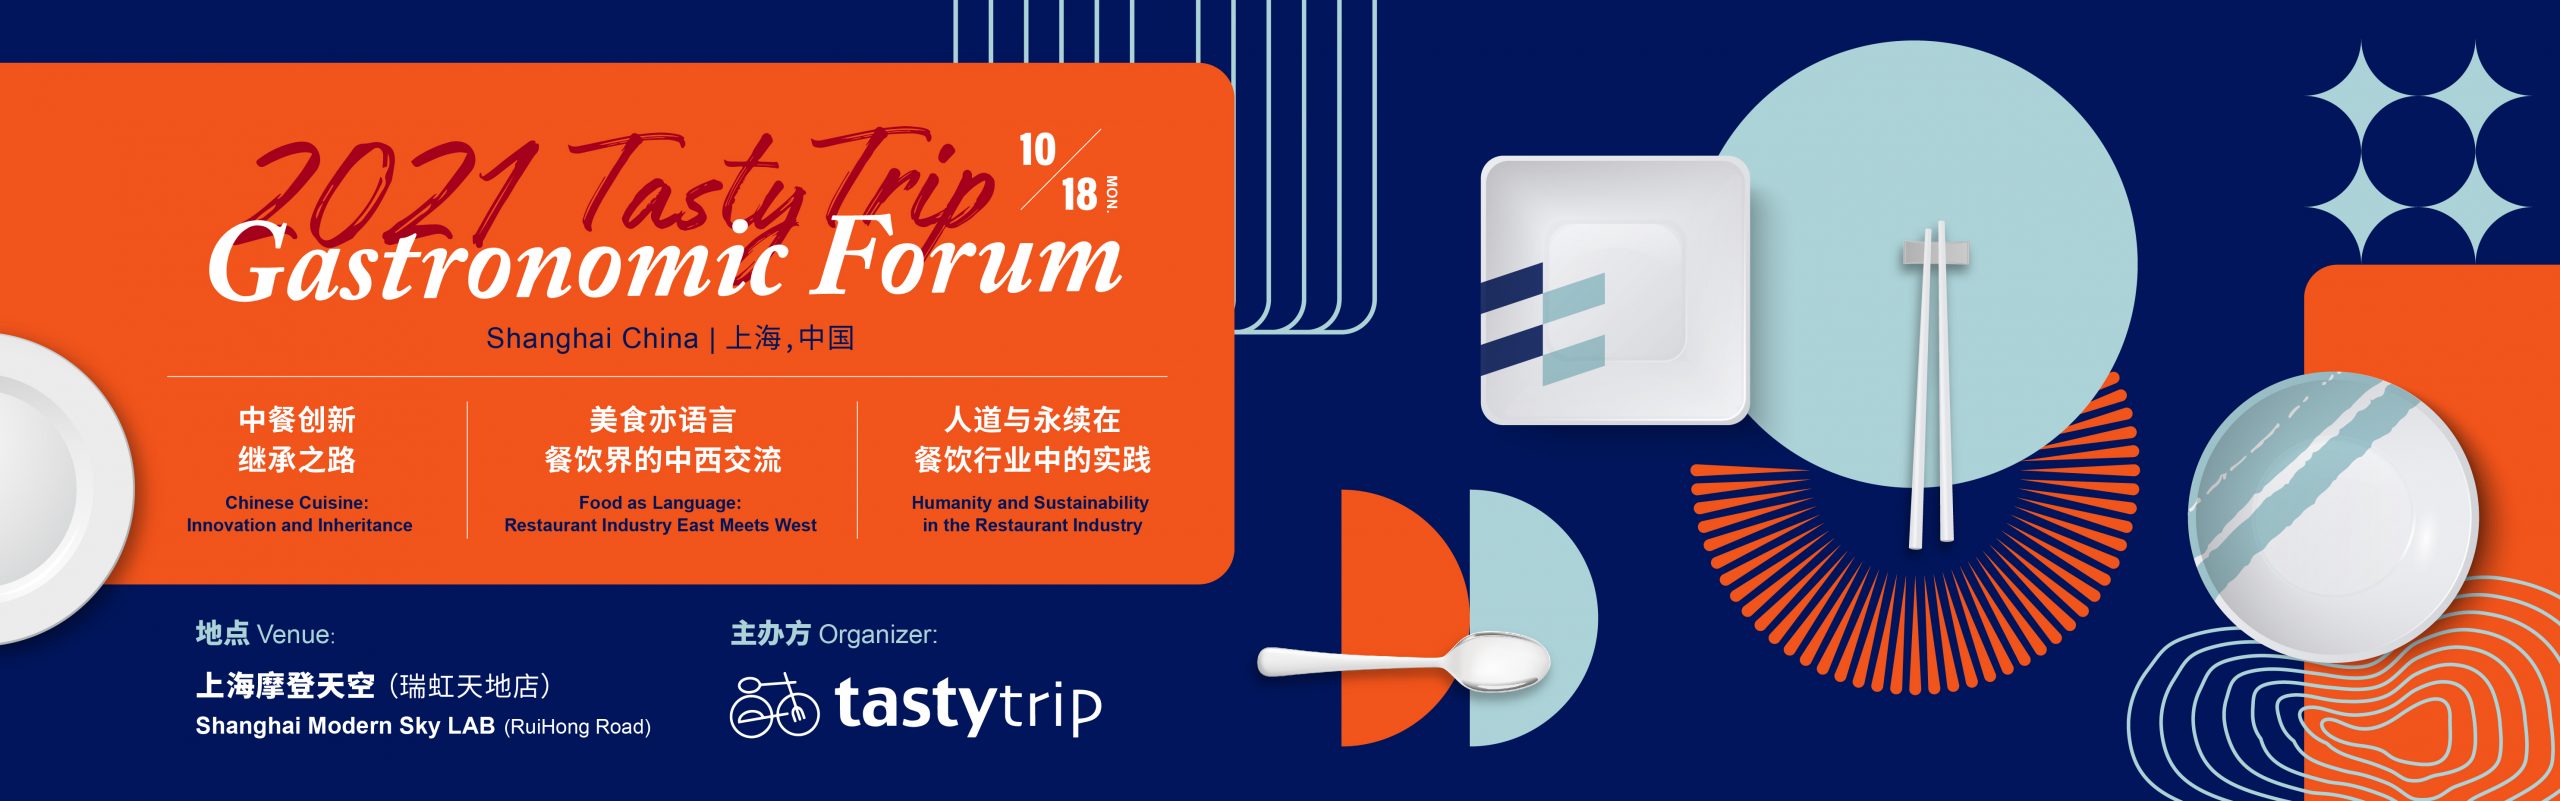 2021 TastyTrip Gastronomic Forum